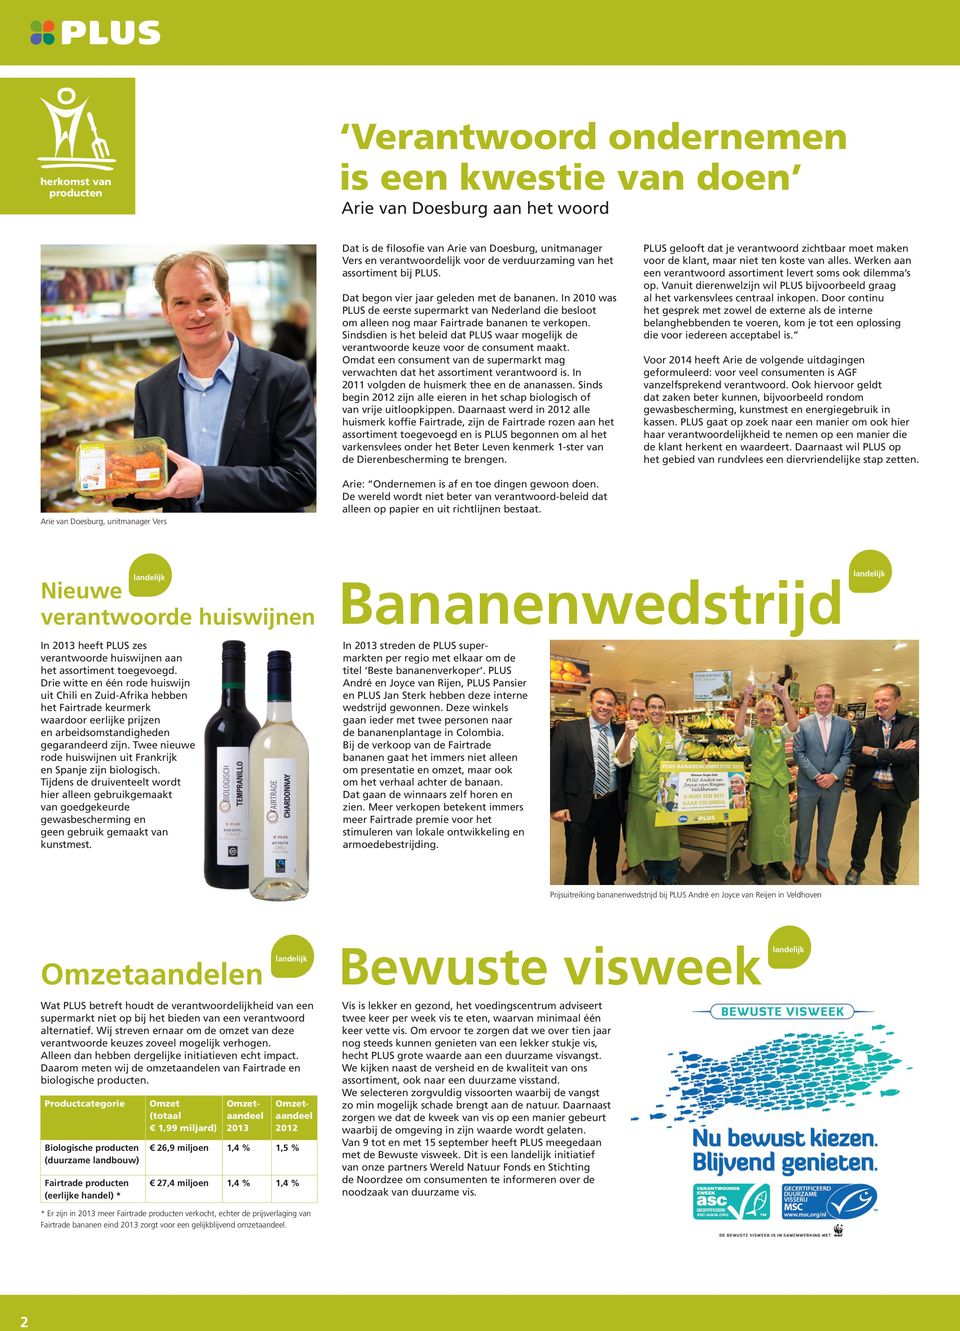 In 2010 was PLUS de eerste supermarkt van Nederland die besloot om alleen nog maar Fairtrade bananen te verkopen.